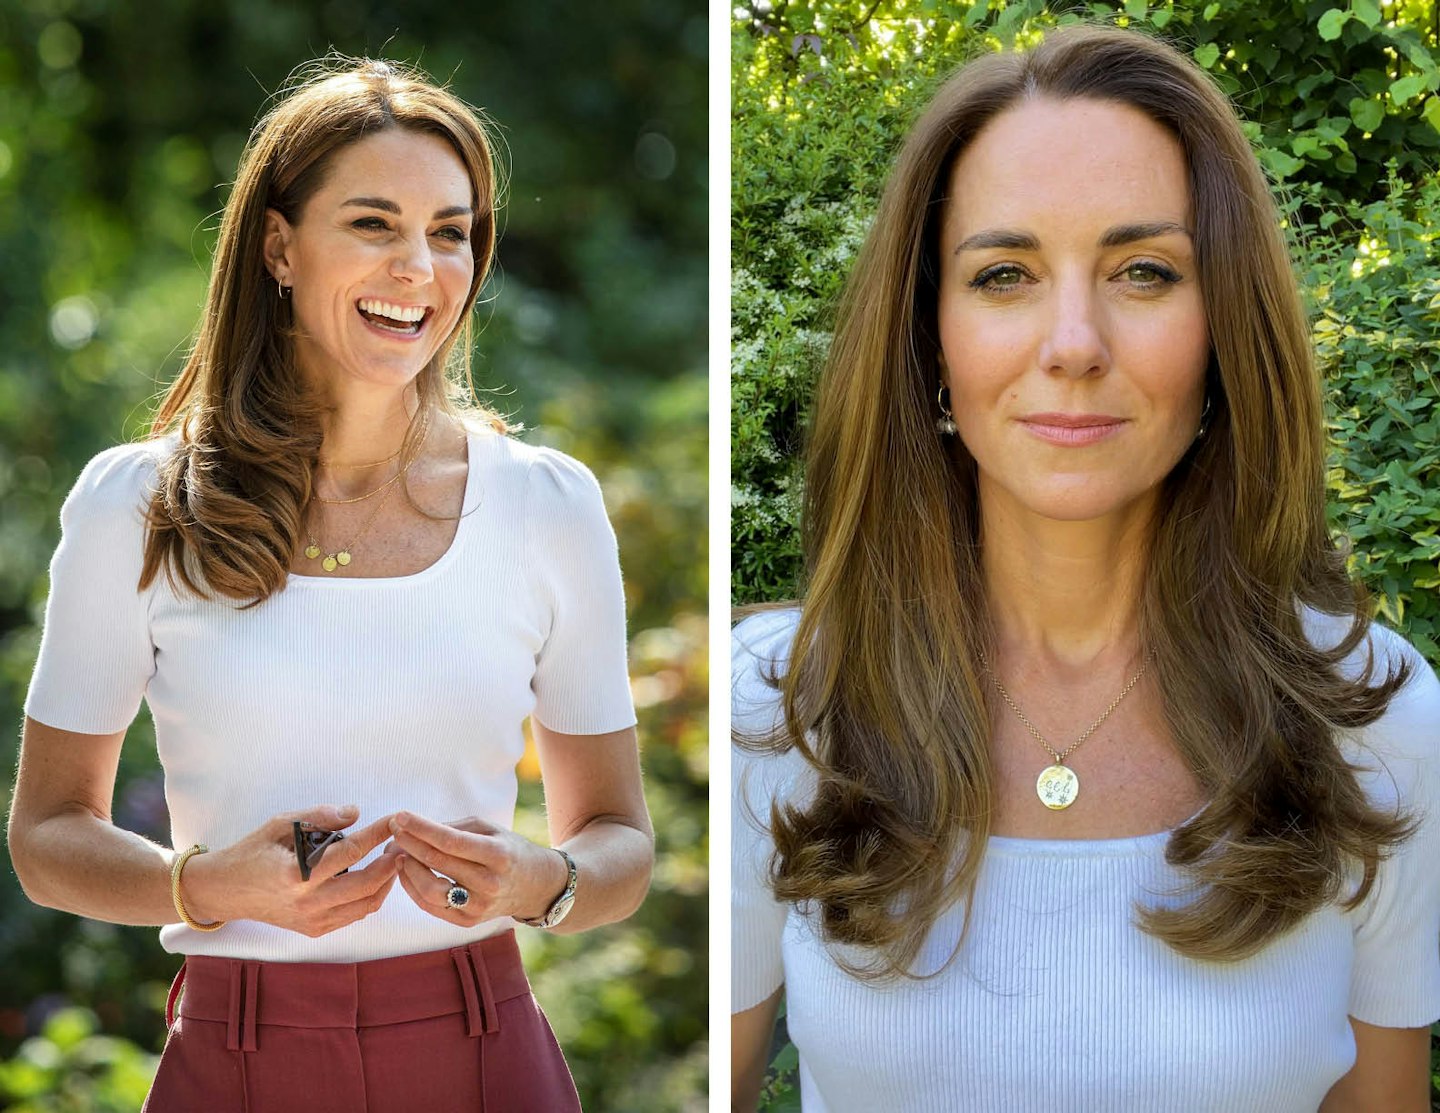 Kate Middleton often wears her children's initials around her neck